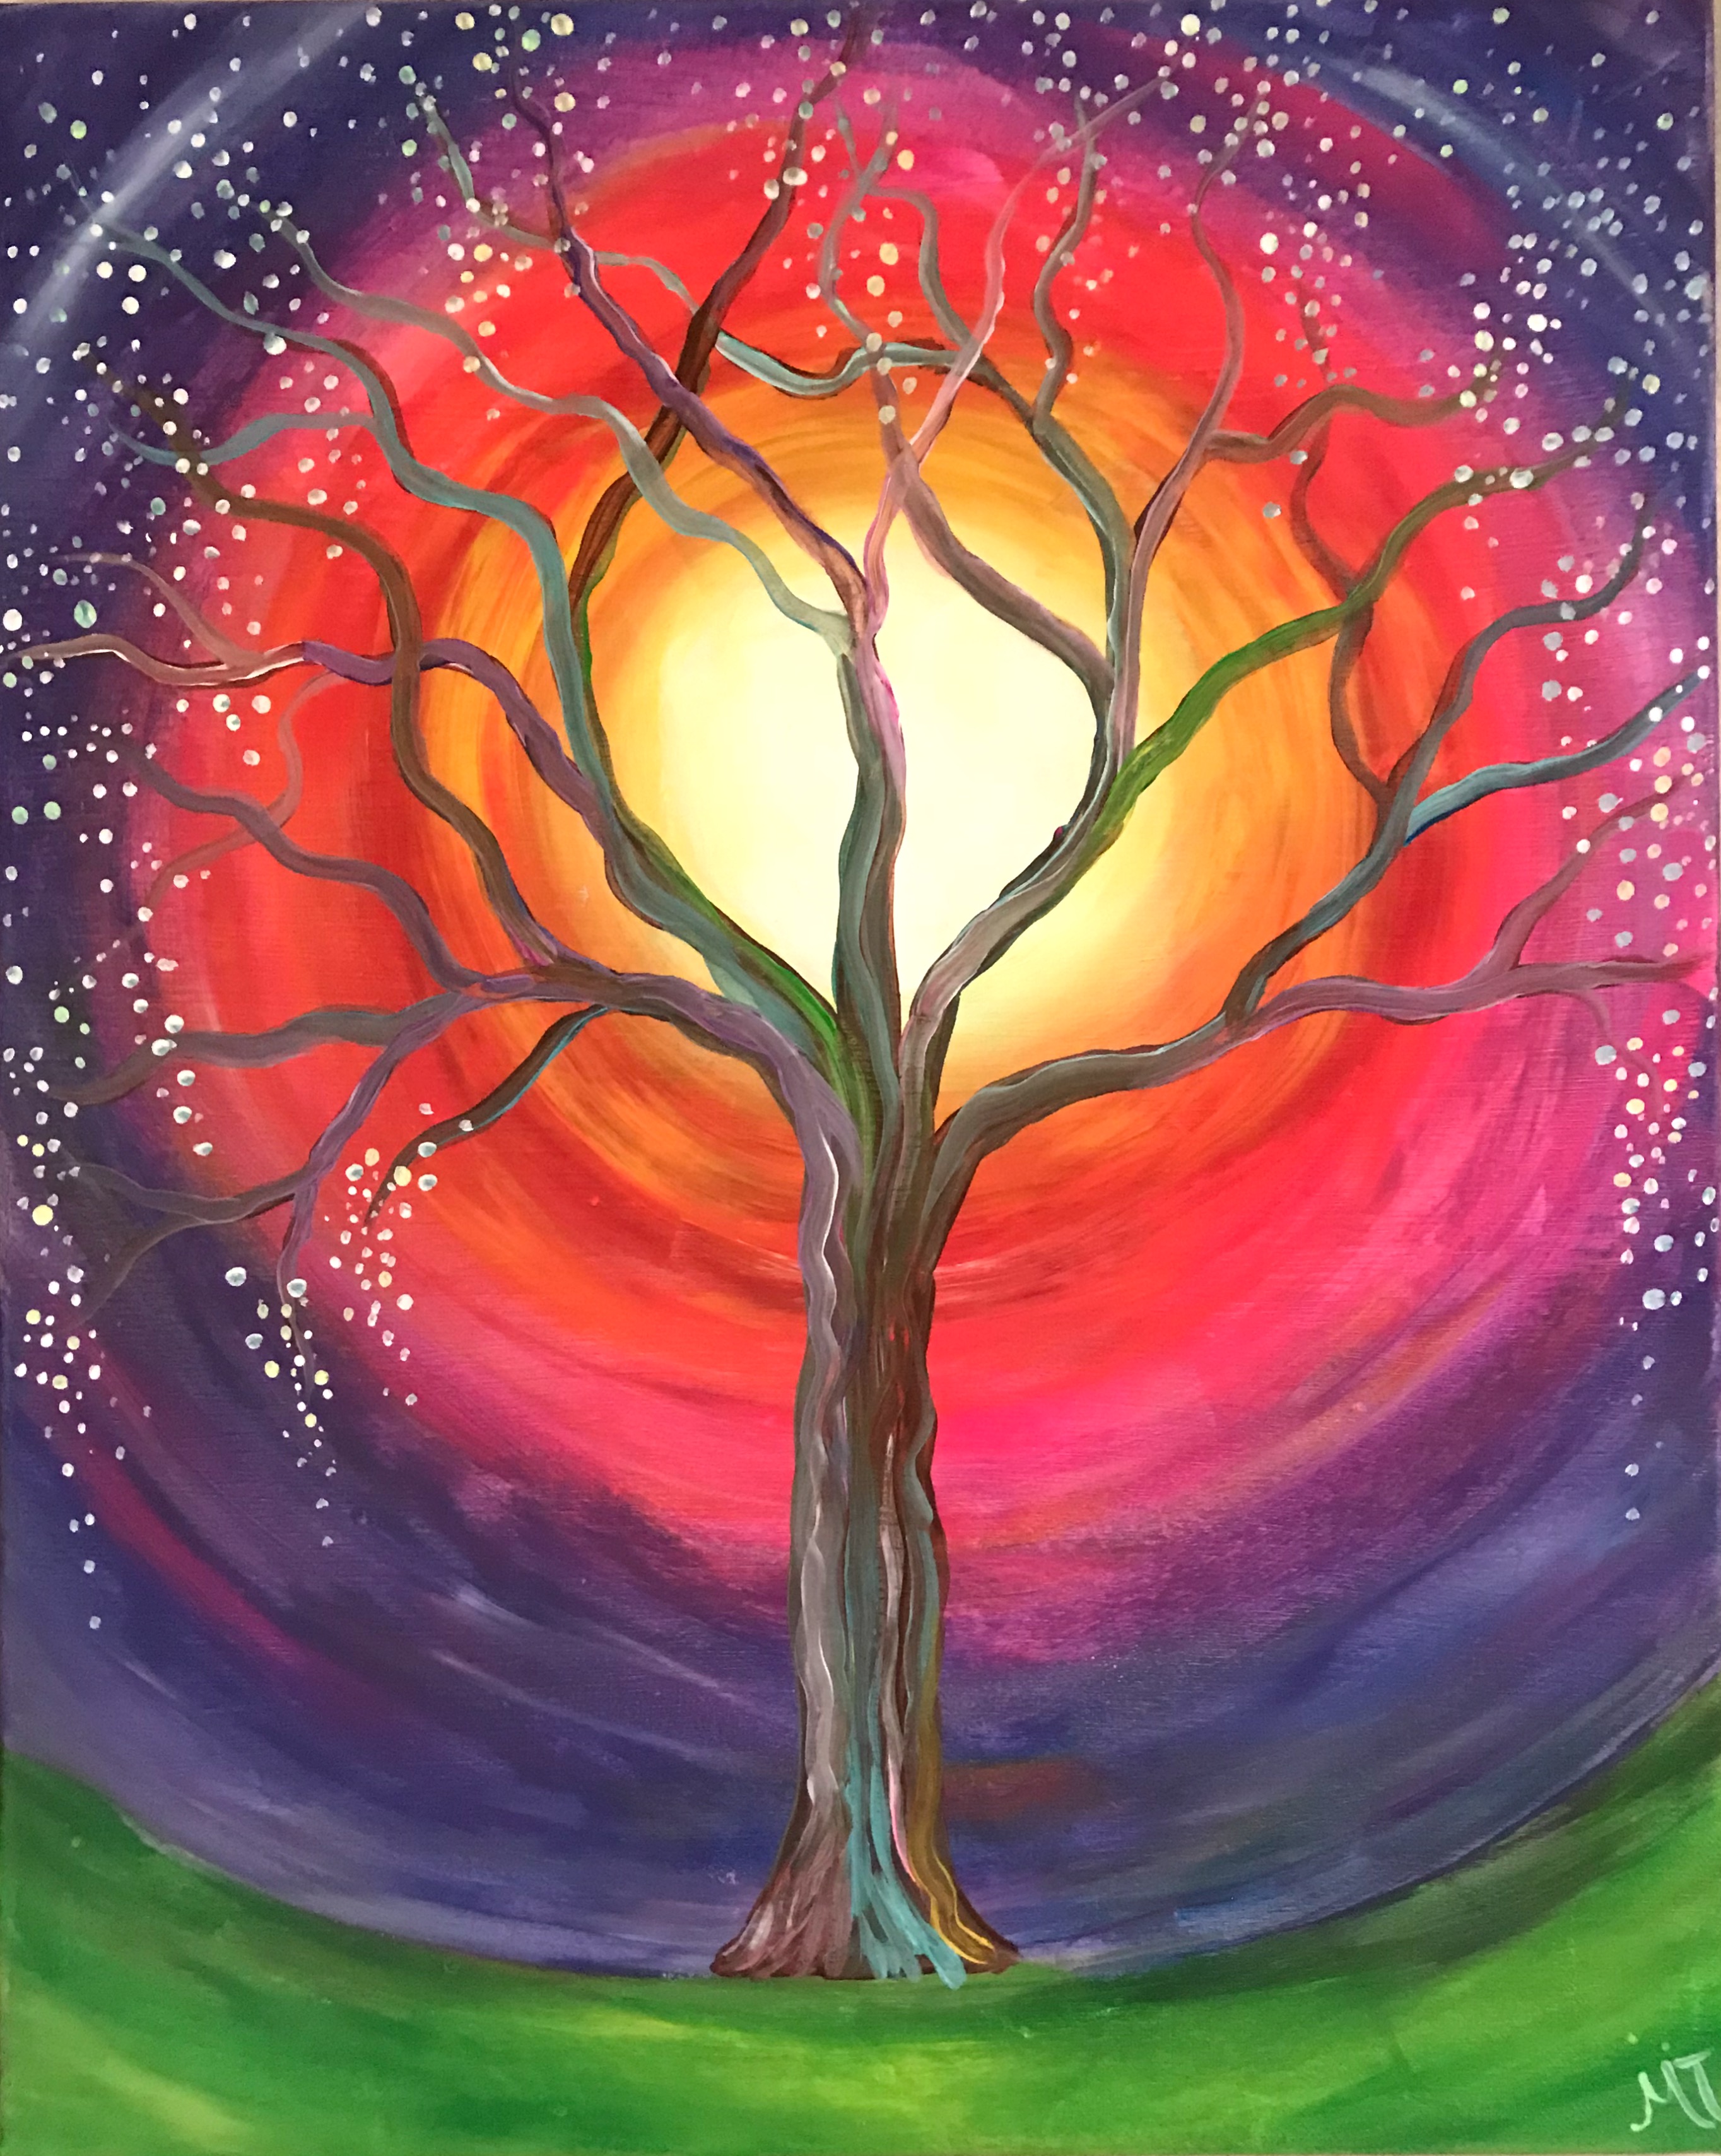 Enchanted Tree at Cheryl Campbell Design and Framing Feb 18 2pm